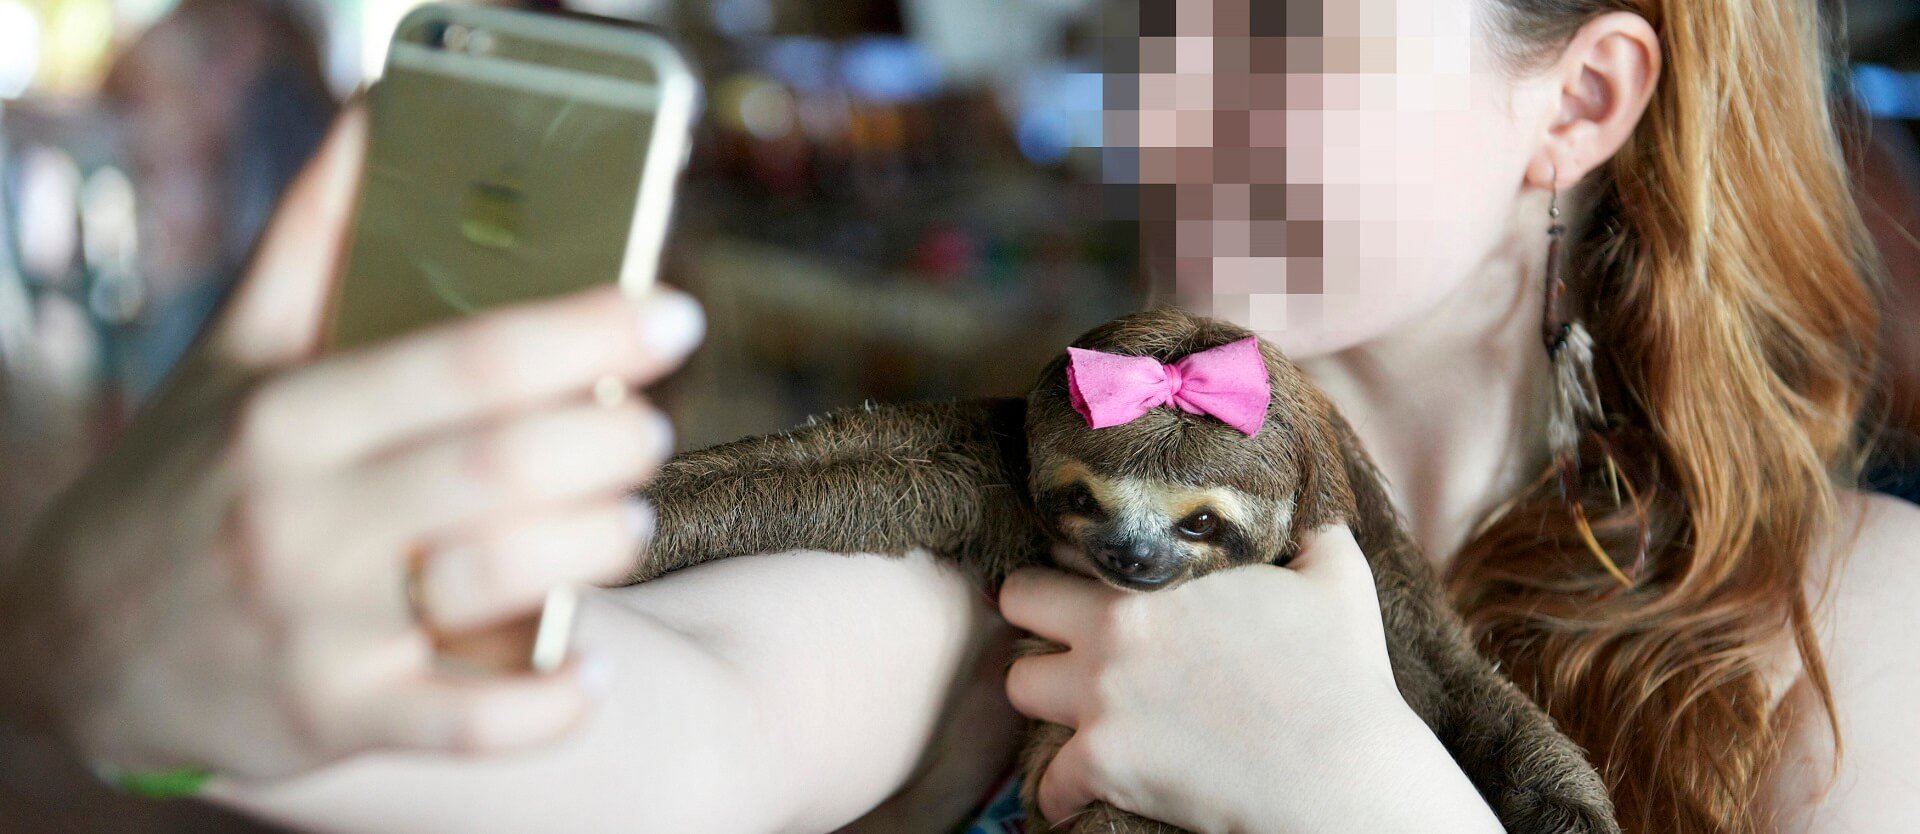 Sloth selfies in Manaus, Brazil